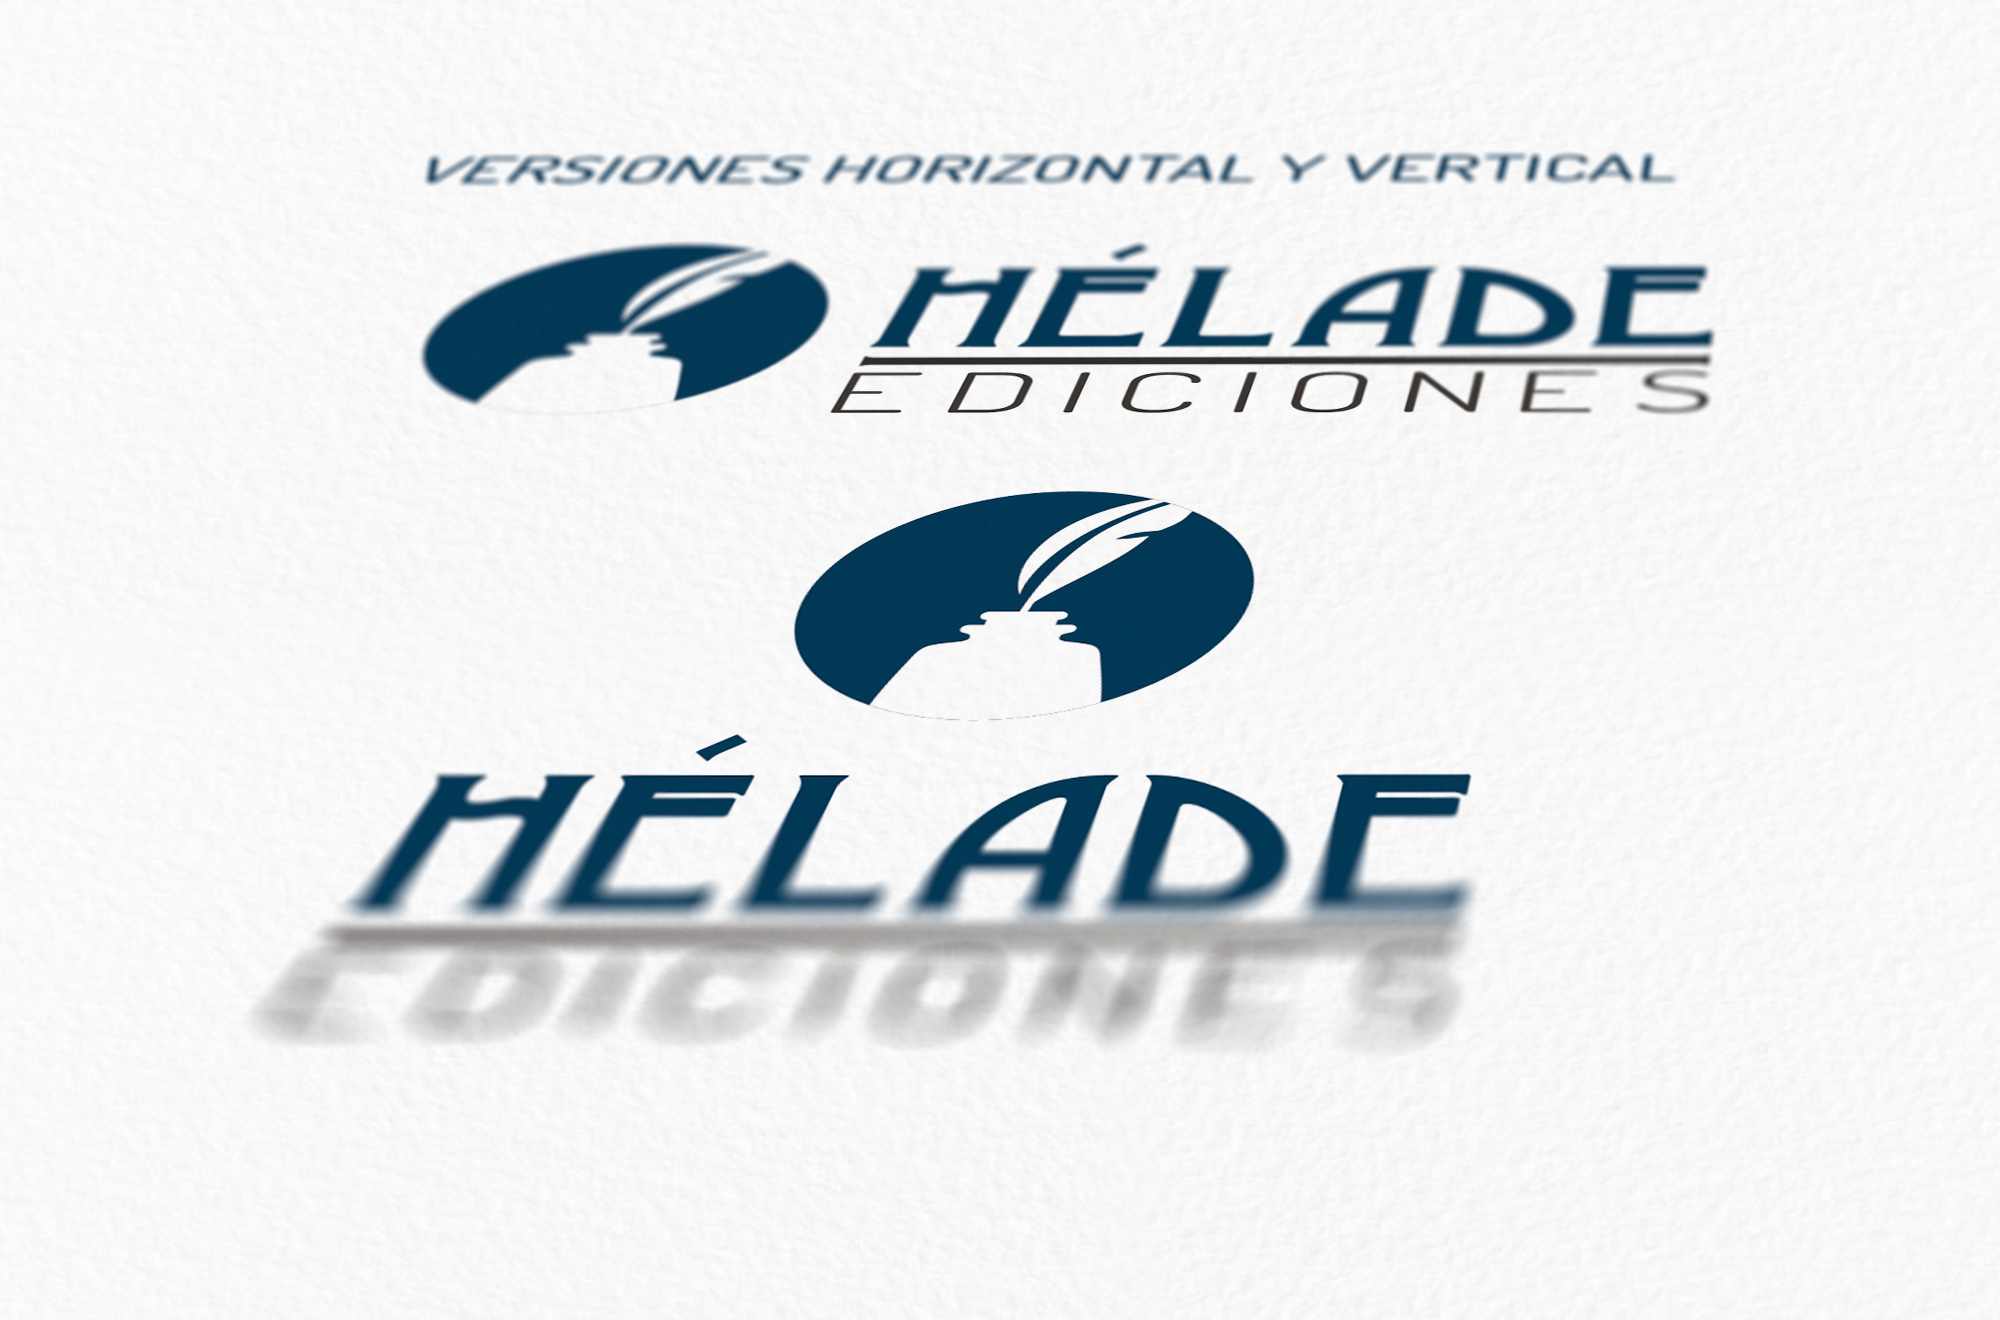 Hélade Ediciones